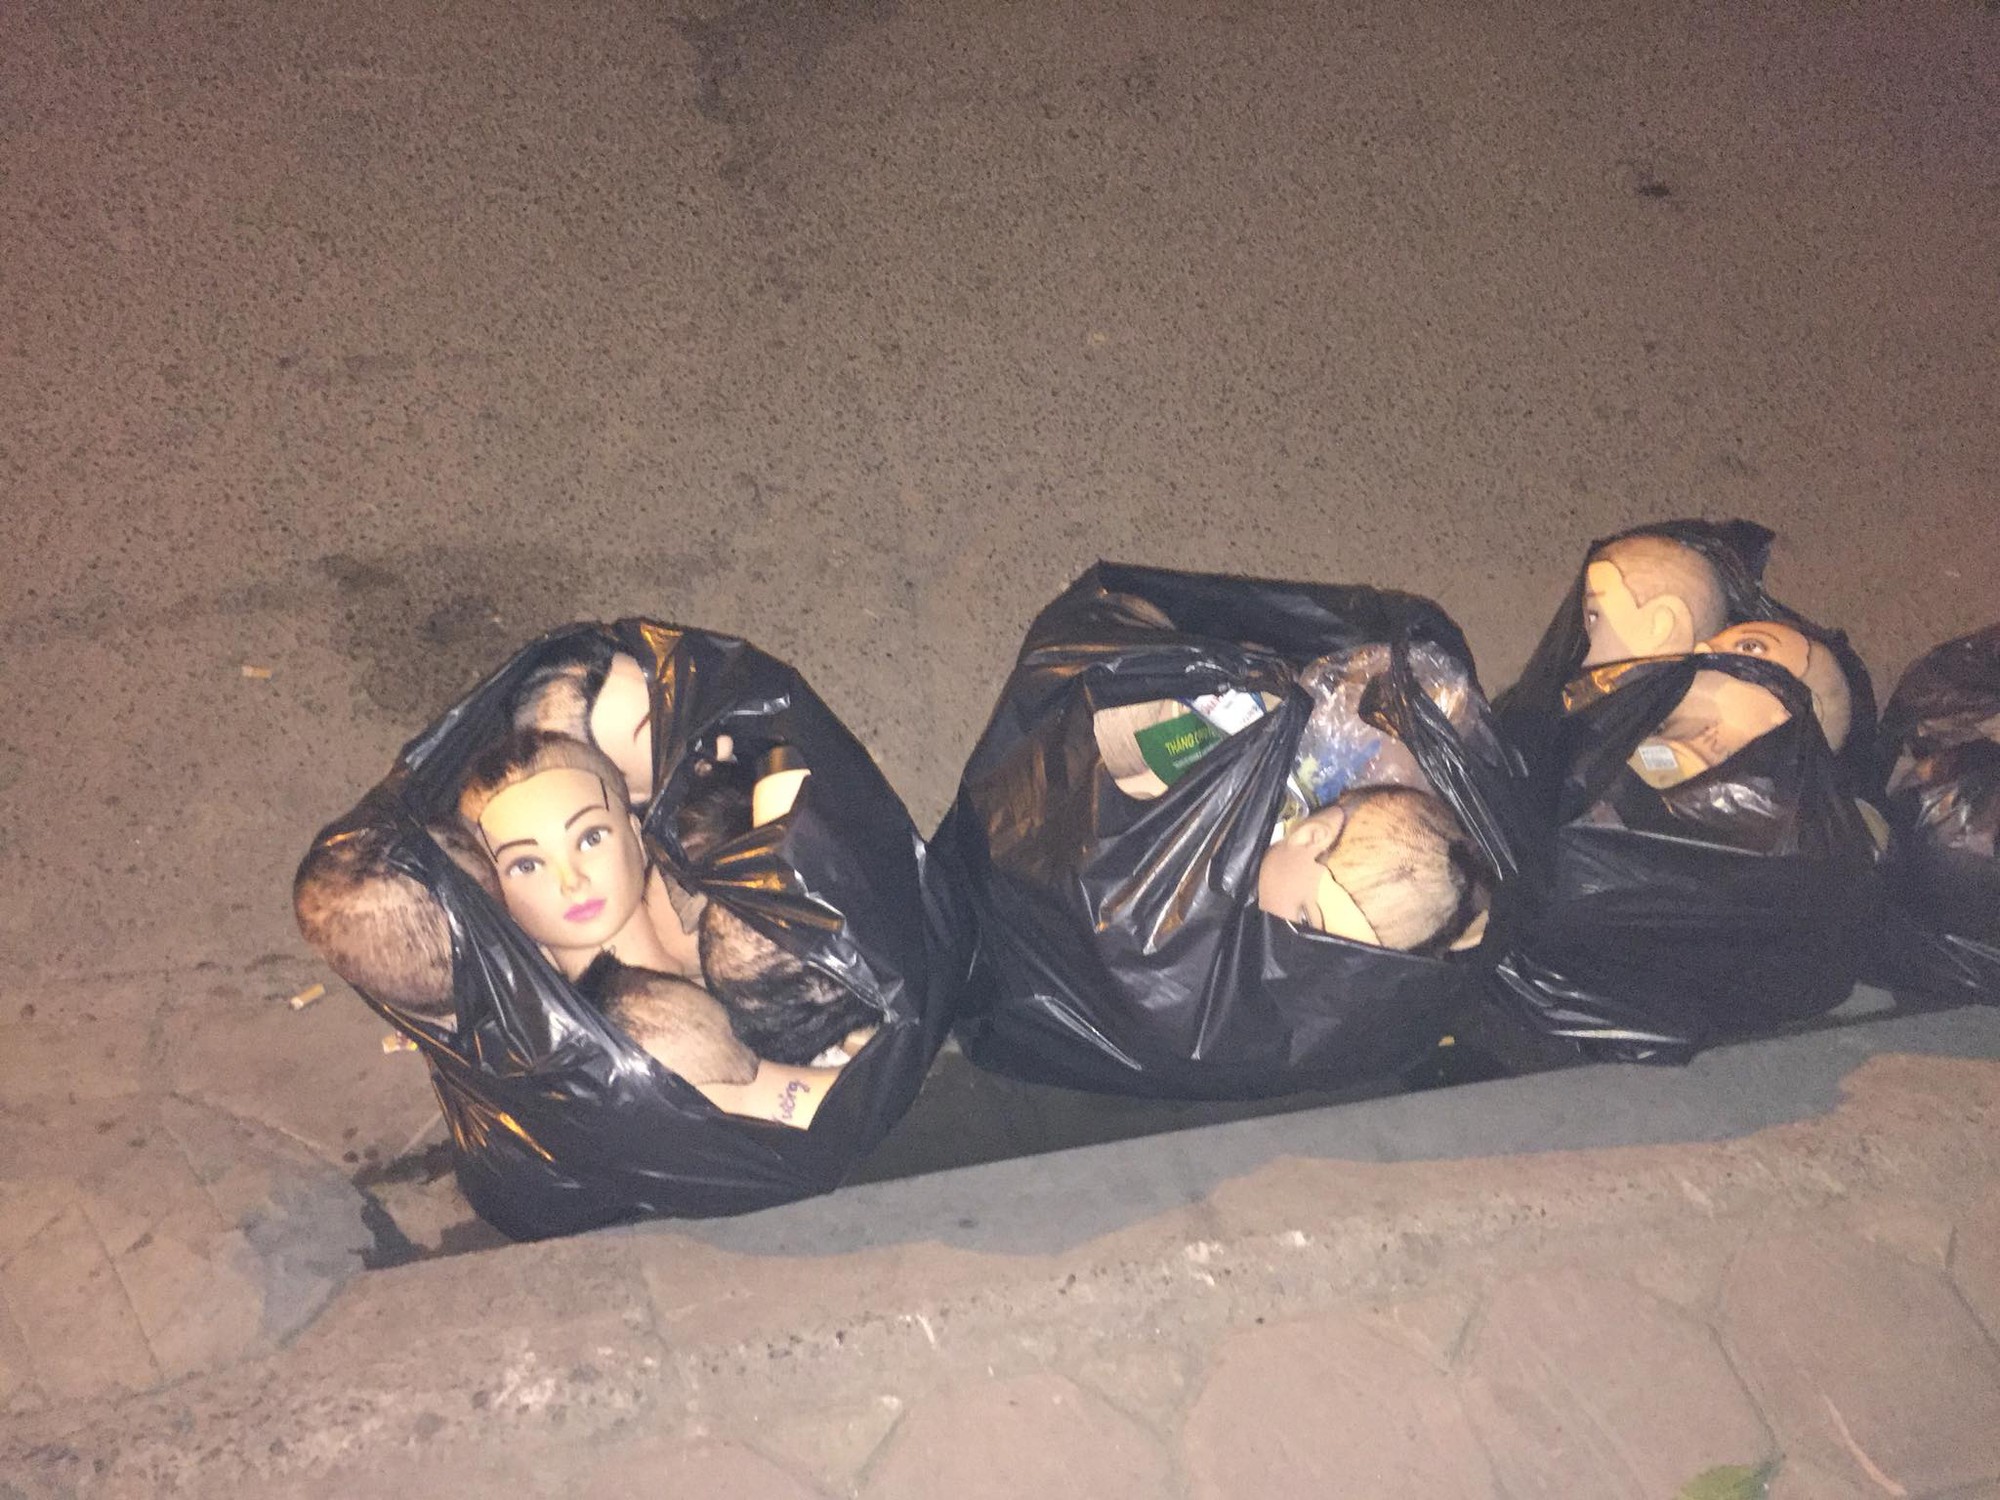 Thanh niên chăm chỉ đi đổ rác đêm, vừa đến nơi thì chạy mất dép vì nhìn thấy 4 chiếc túi đen kinh dị - Ảnh 1.